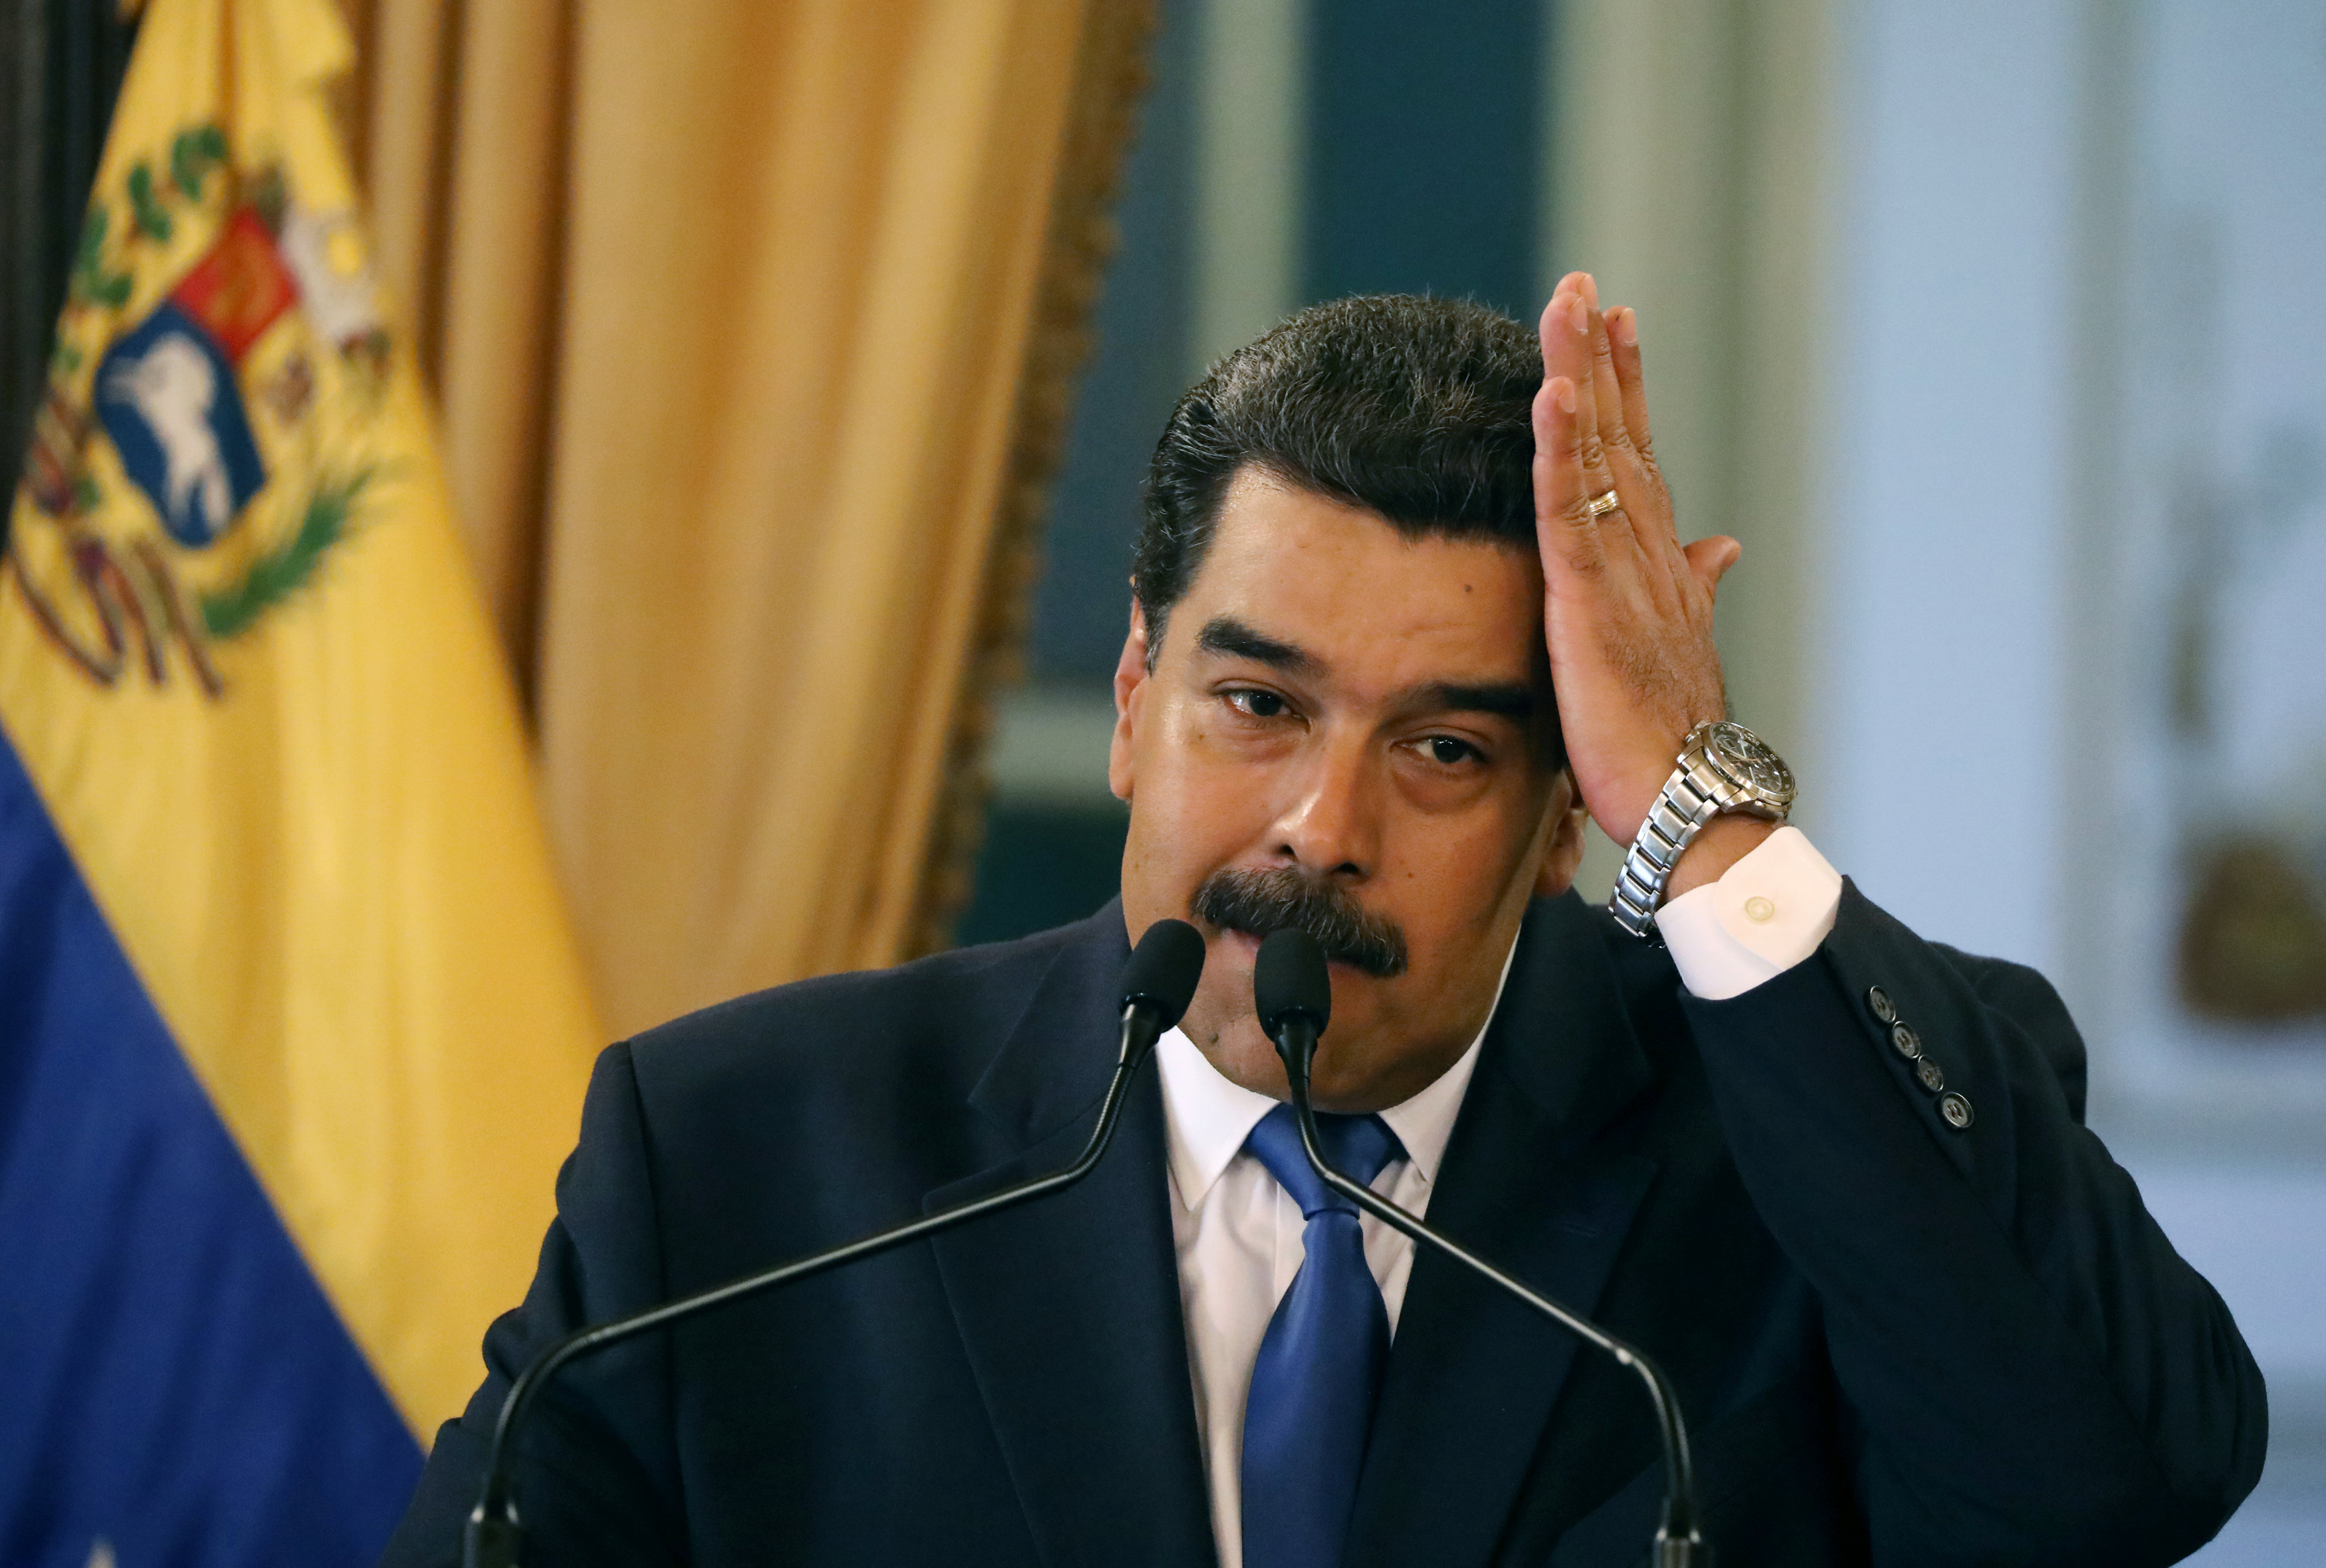 “La situación es grave, pero paso a paso garantizaremos el servicio eléctrico”, promete Maduro